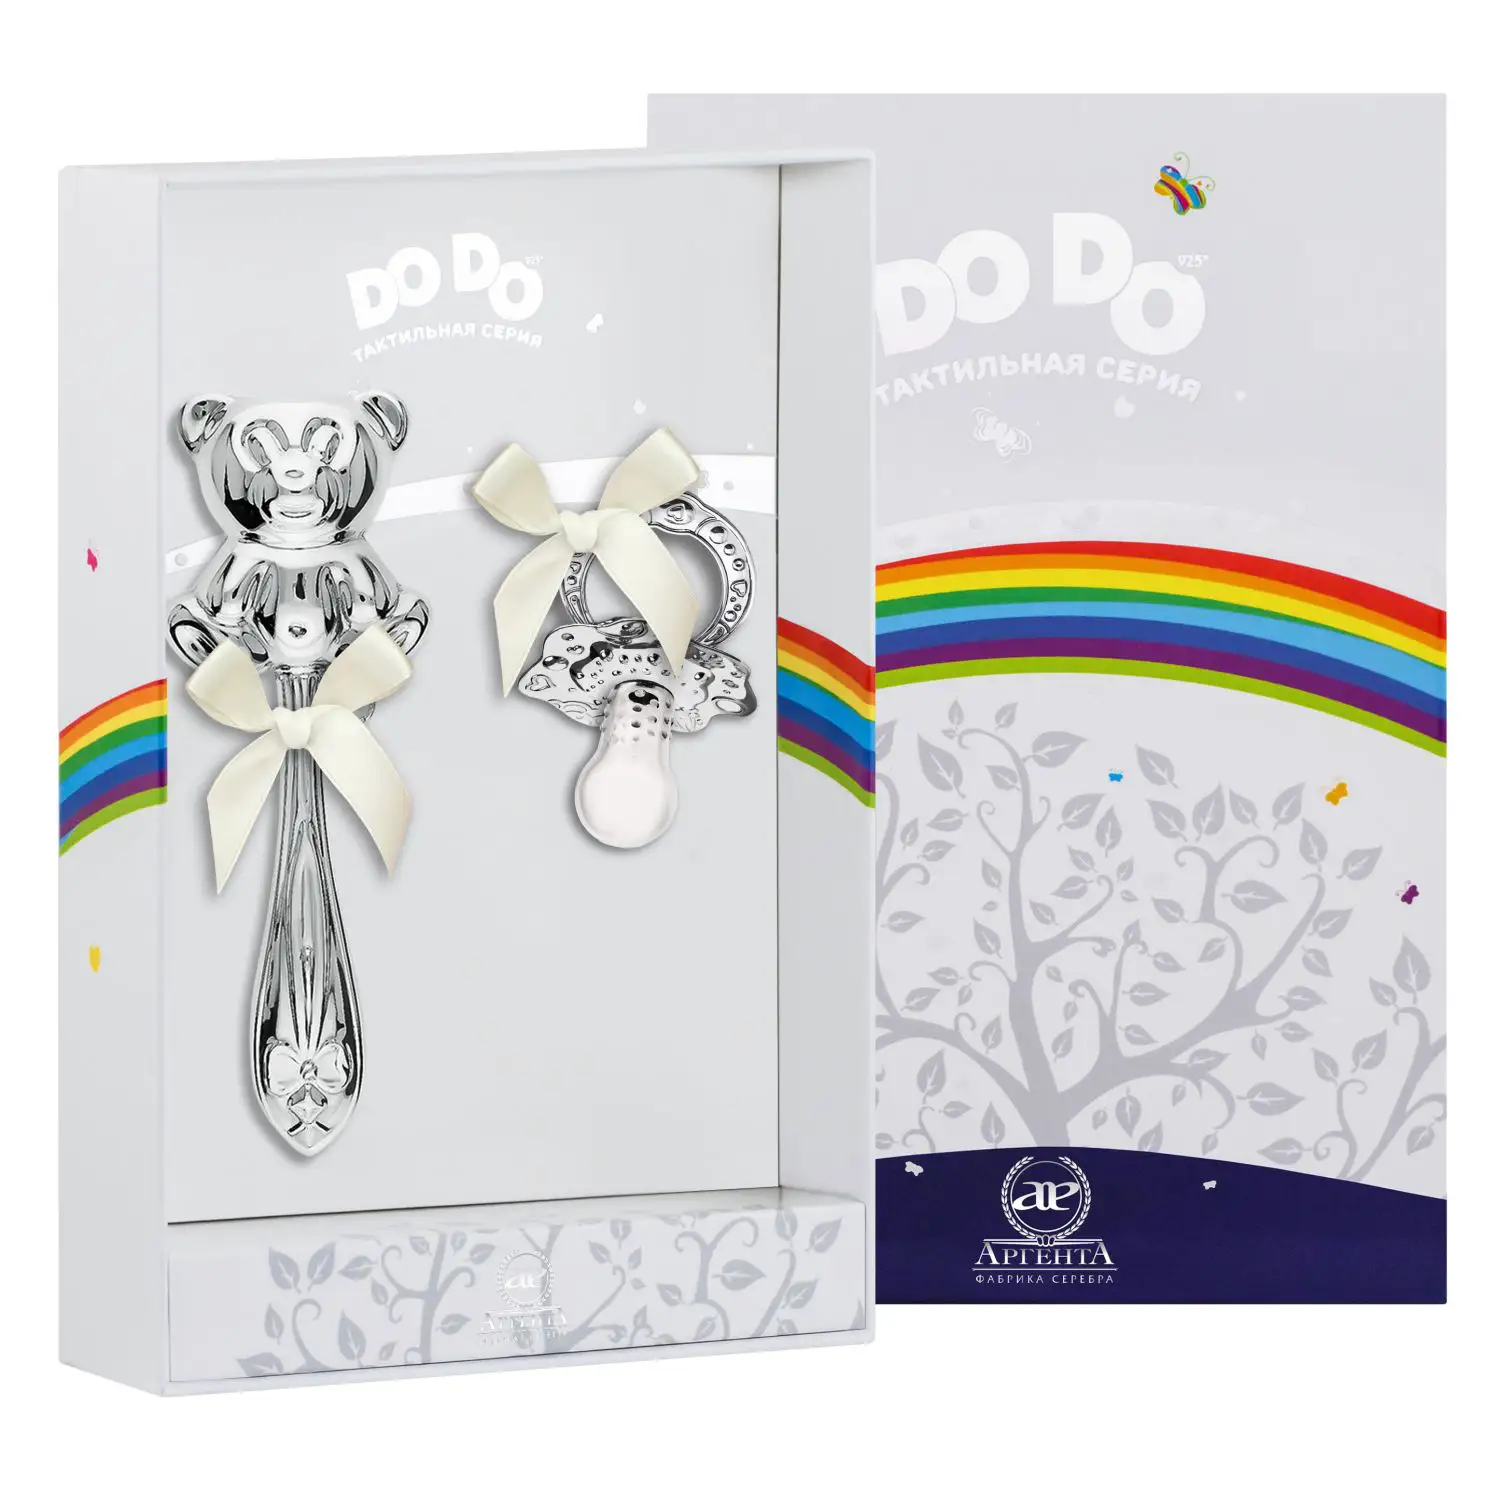 Набор для малышей DODO Медведь: погремушка и сувенир-пустышка (Серебро 925) набор для малышей dodo мишка малышка кружка погремушка сувенир пустышка серебро 925